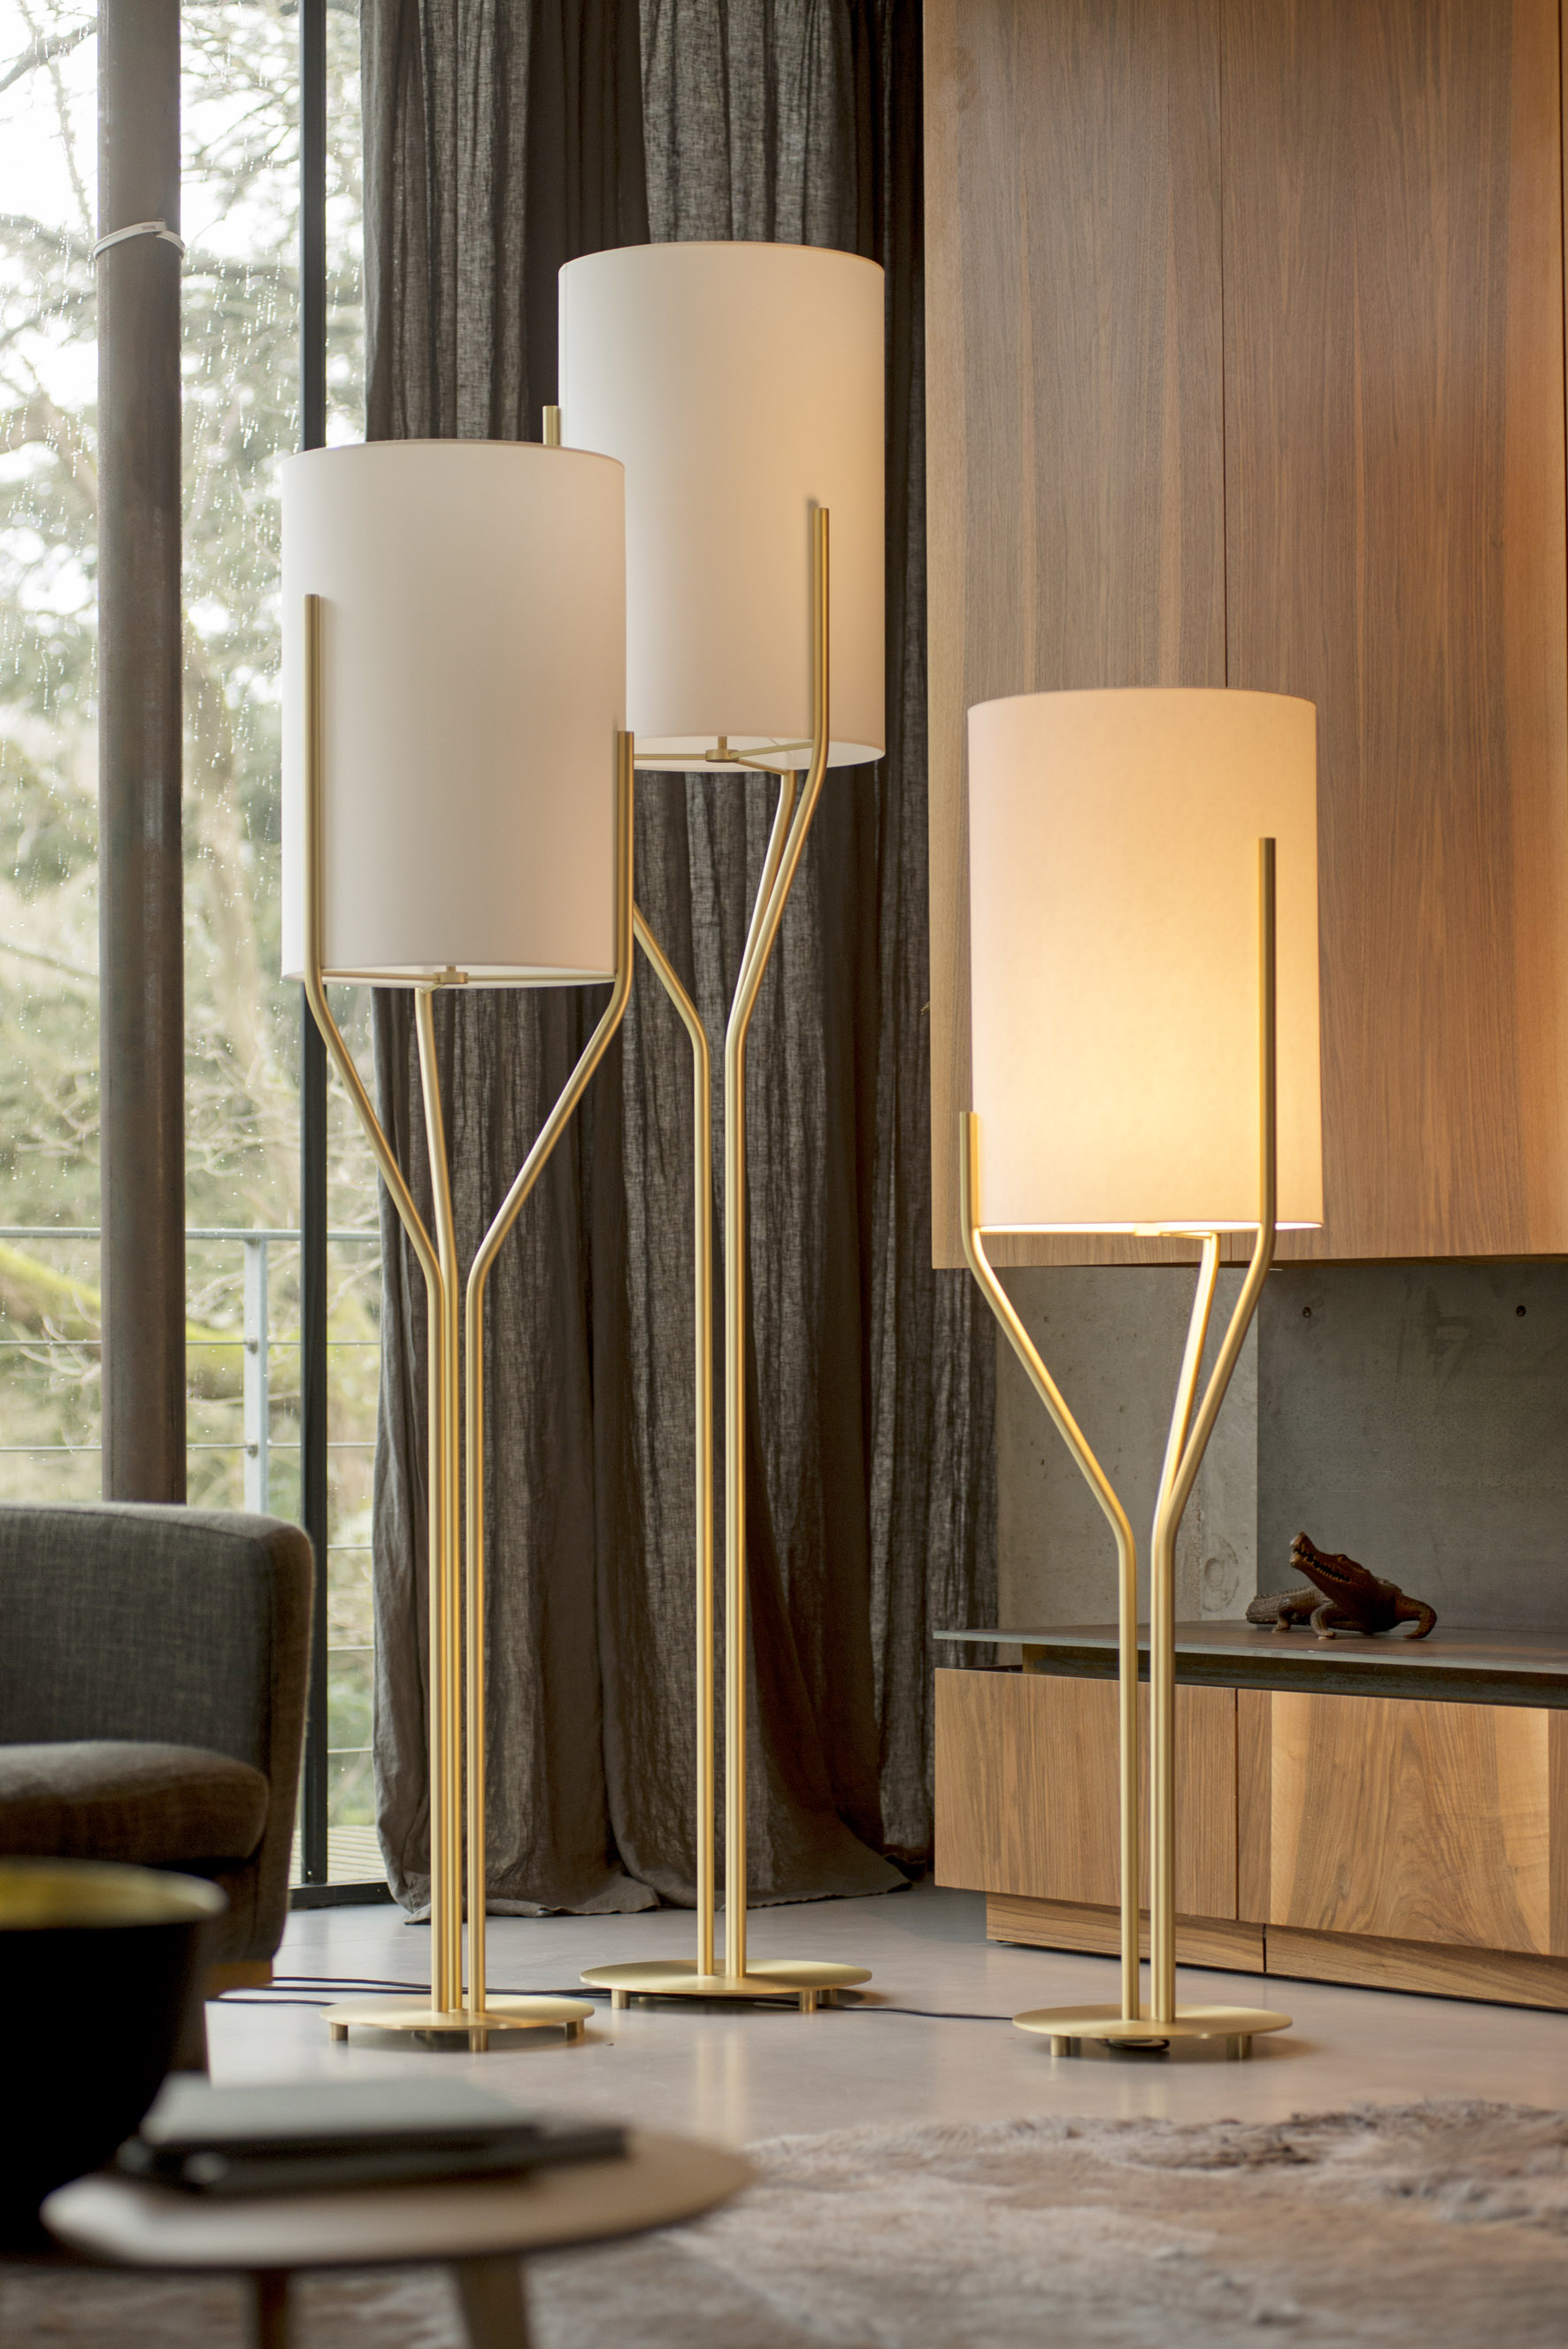 TOP 10 Luxury floor lamps 2022 - Warisan Lighting